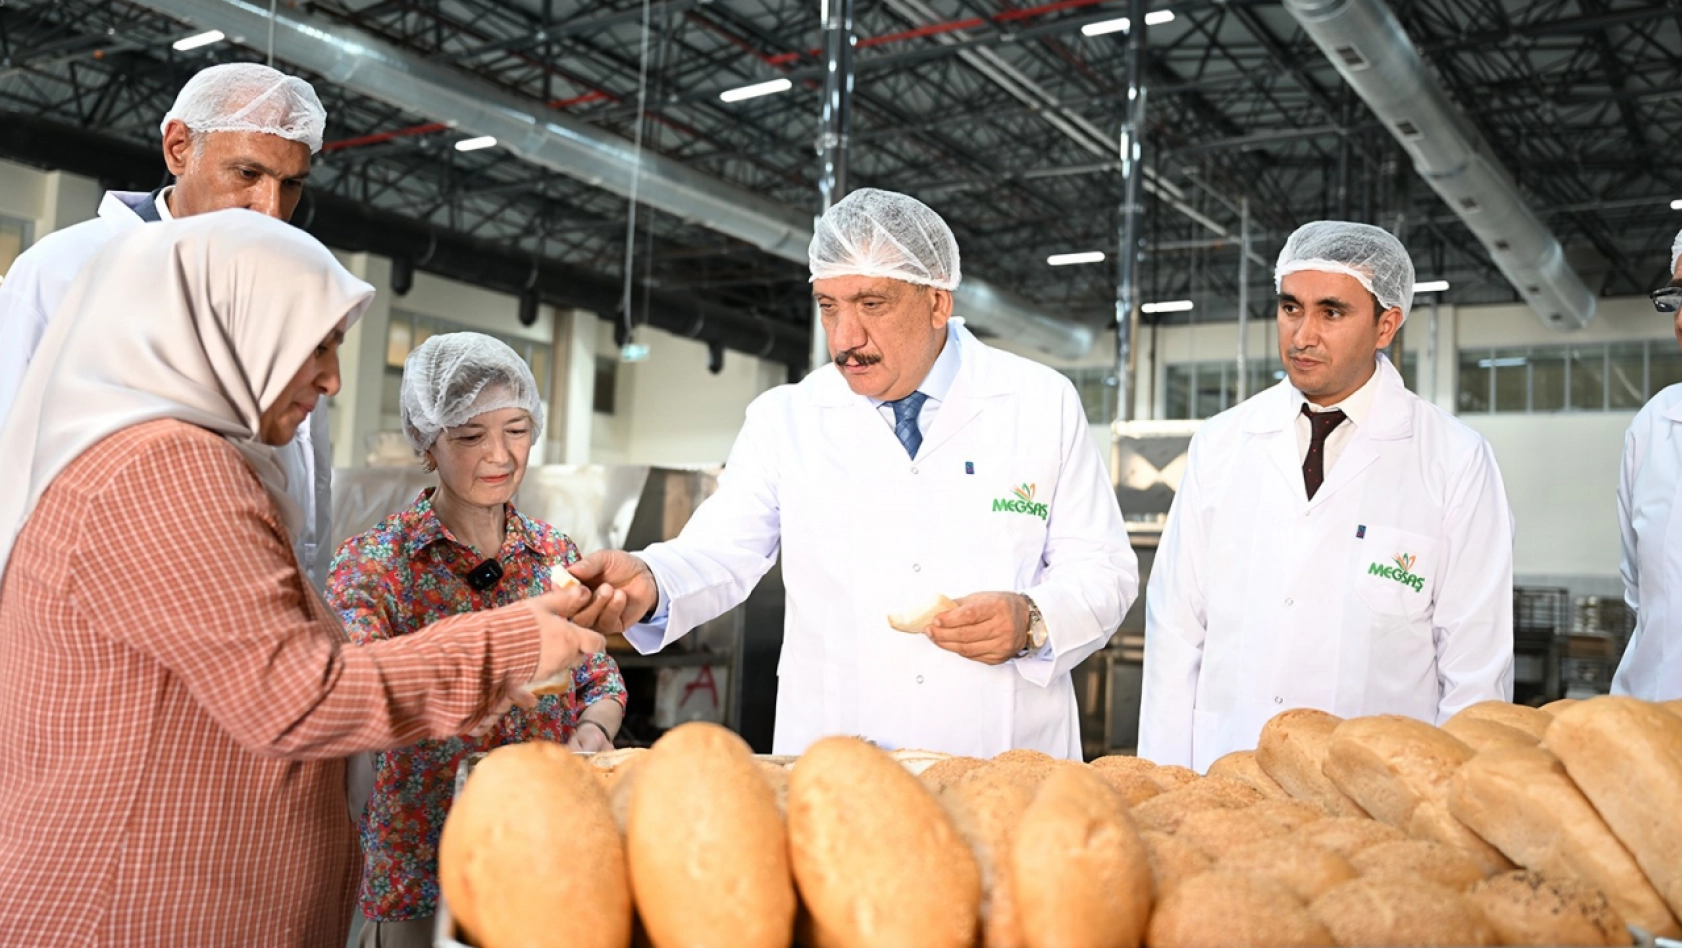 Malatya'da çölyak hastaları için glütensiz ekmek üretimi